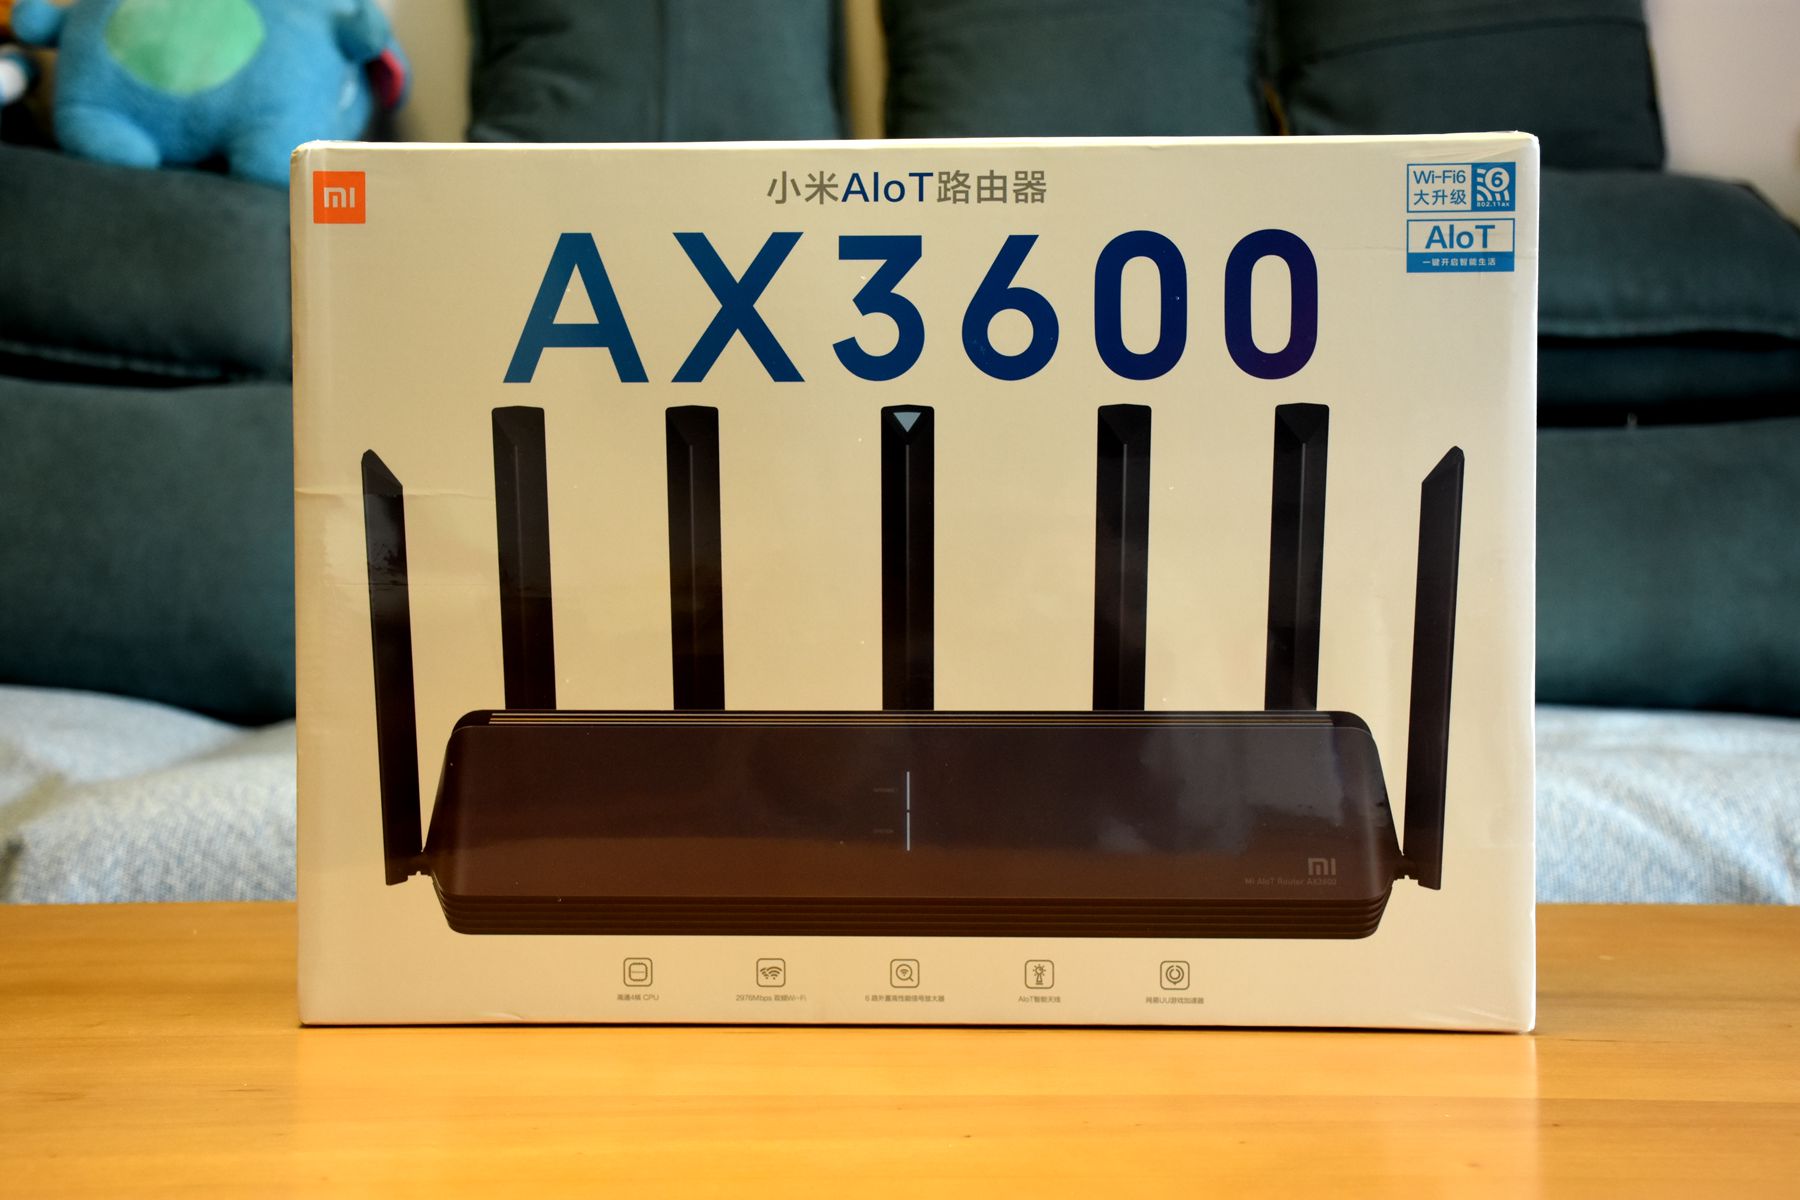 599 yuan to buy Wi-Fi 6 Xiaomi AIoT router AX3600 experience